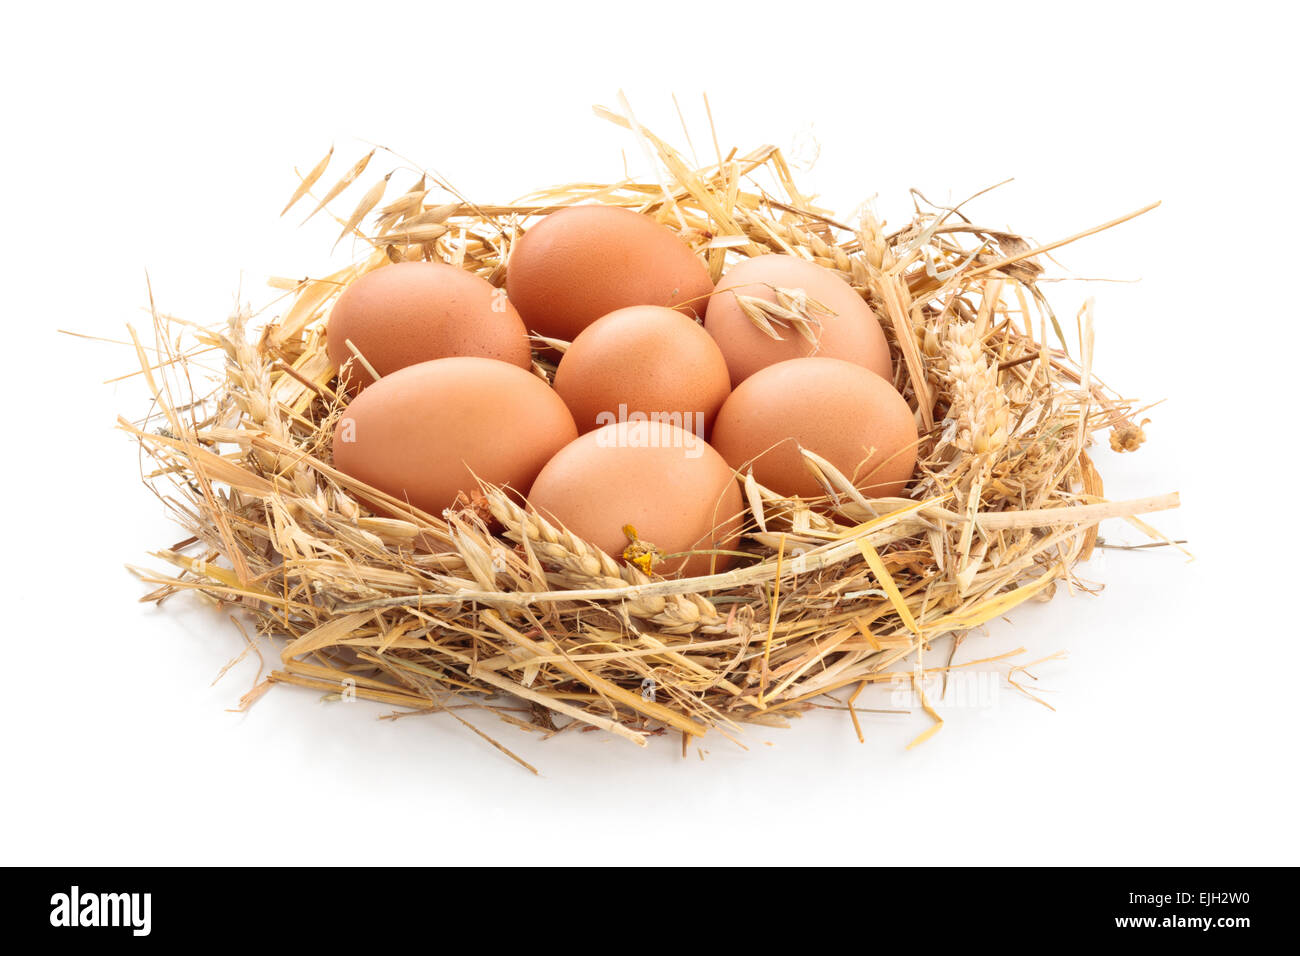 Los huevos de pollo en el nido de paja. Foto de stock